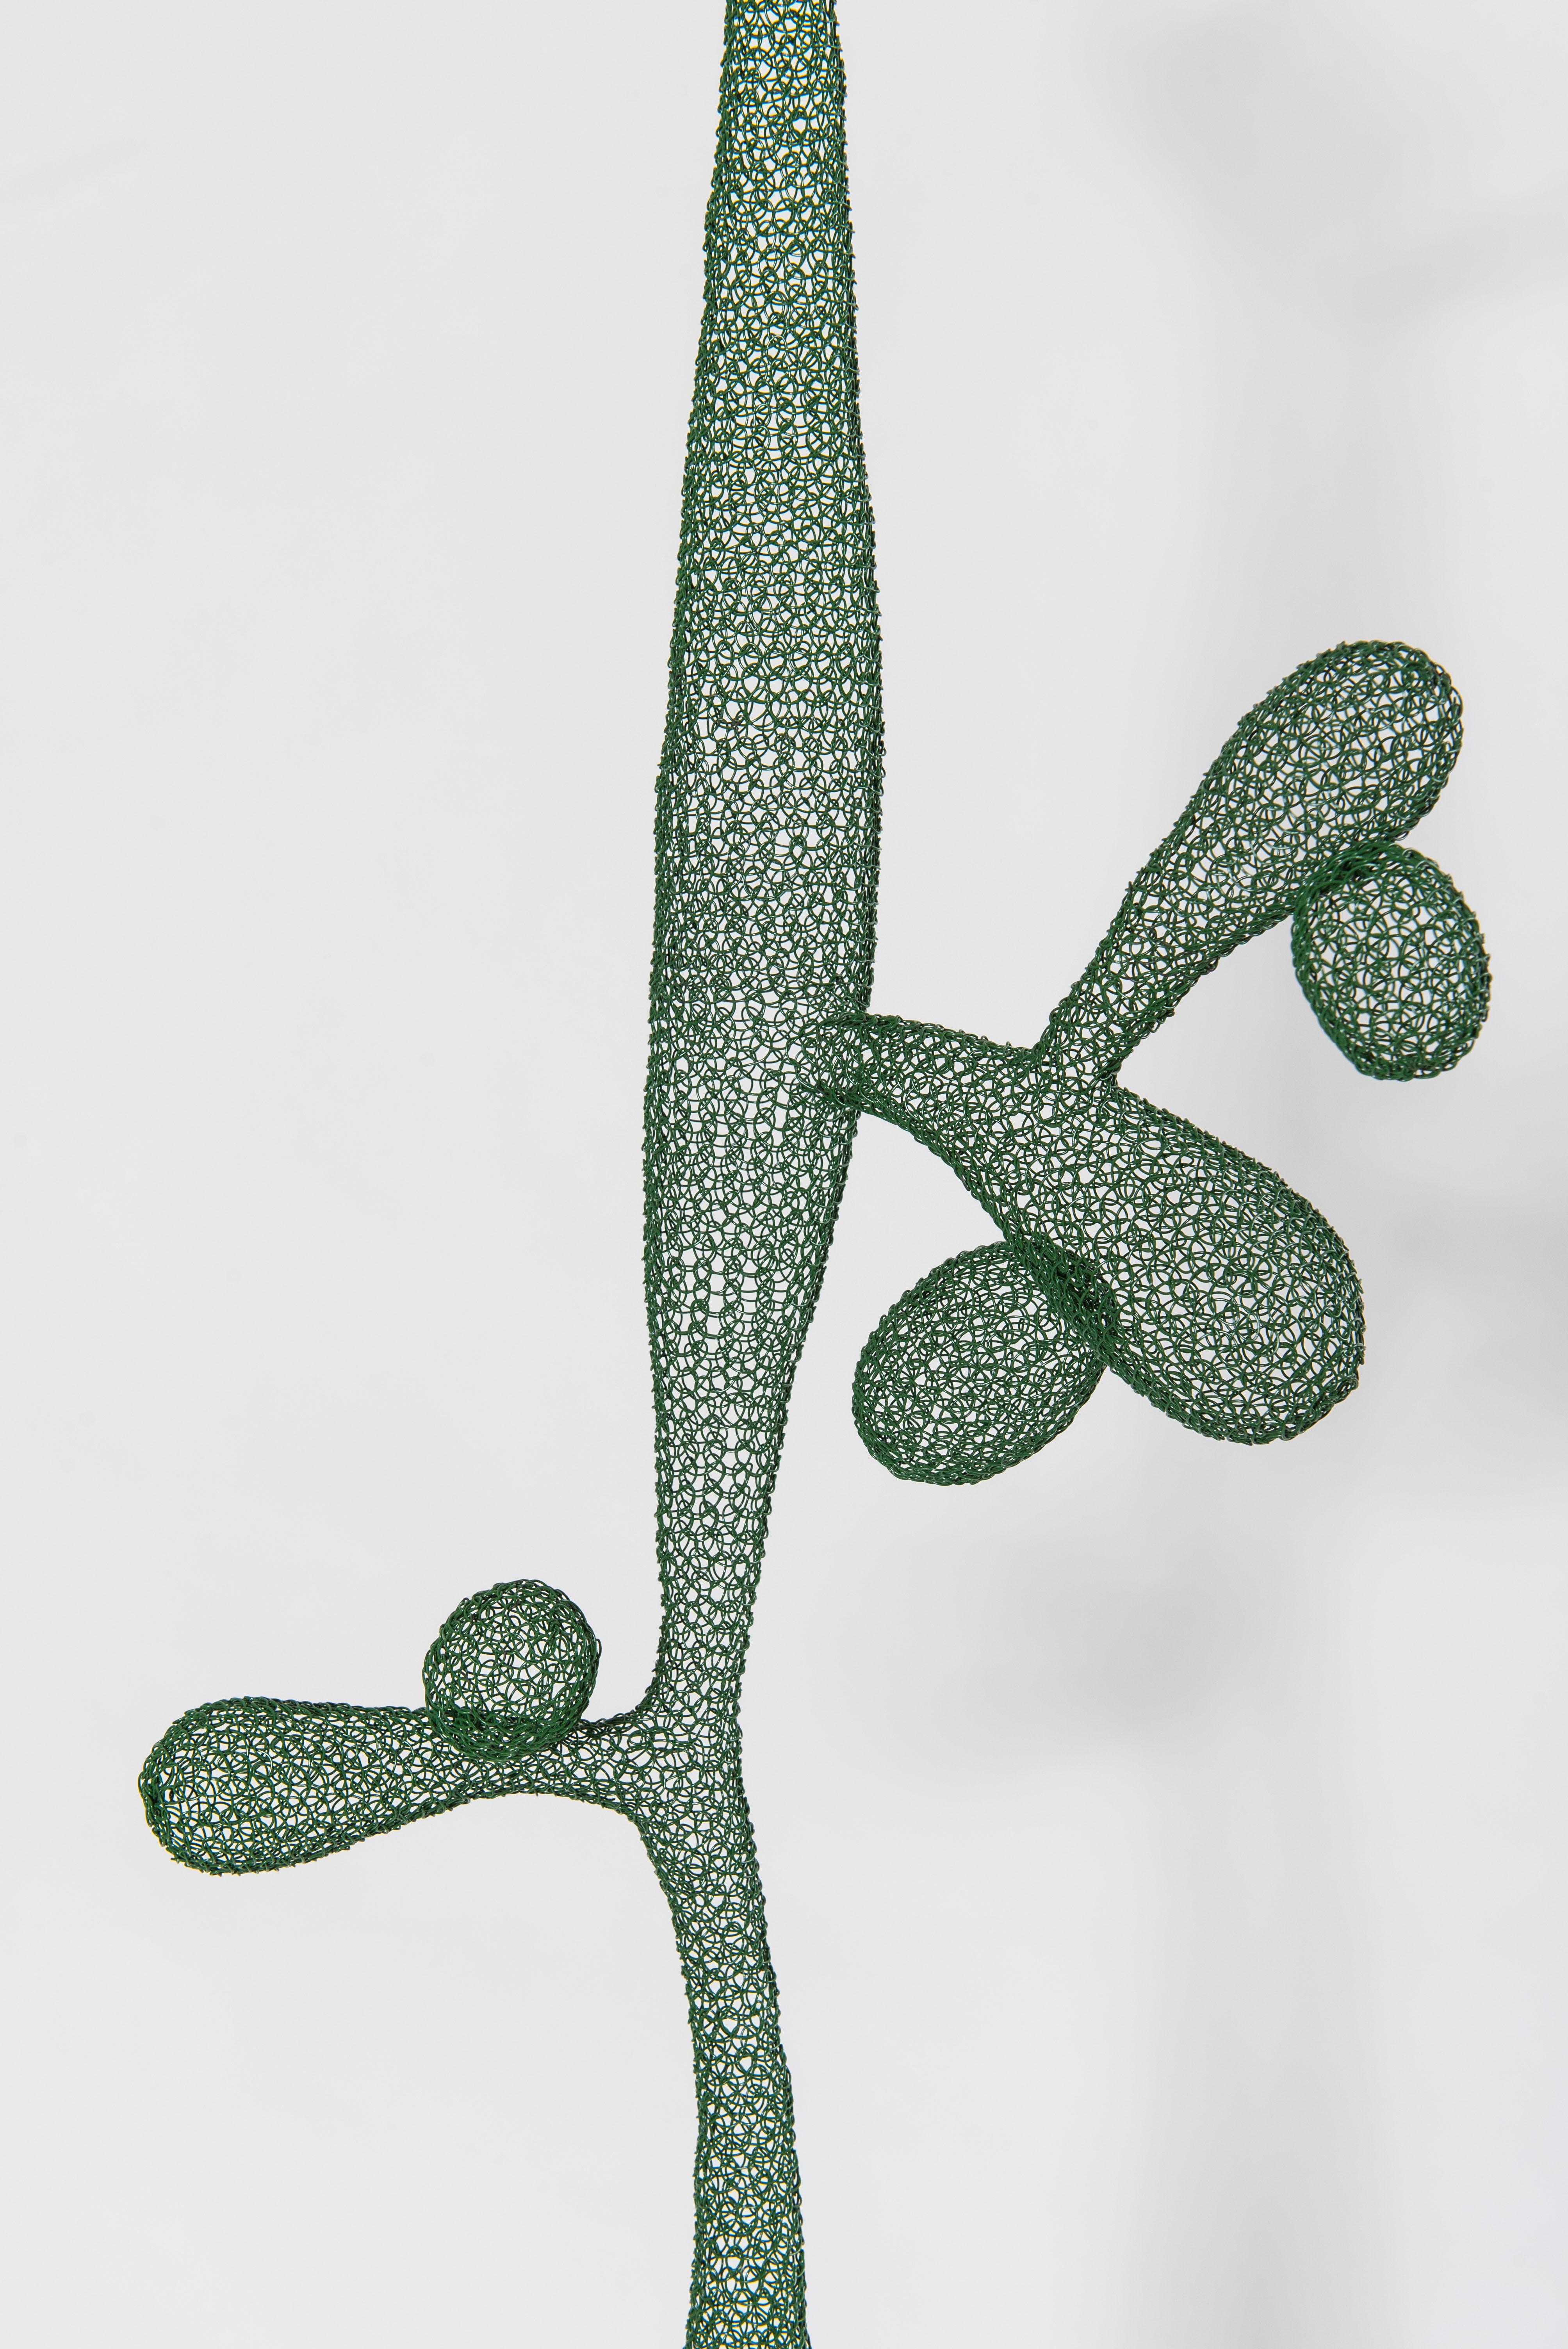 wire cactus sculpture